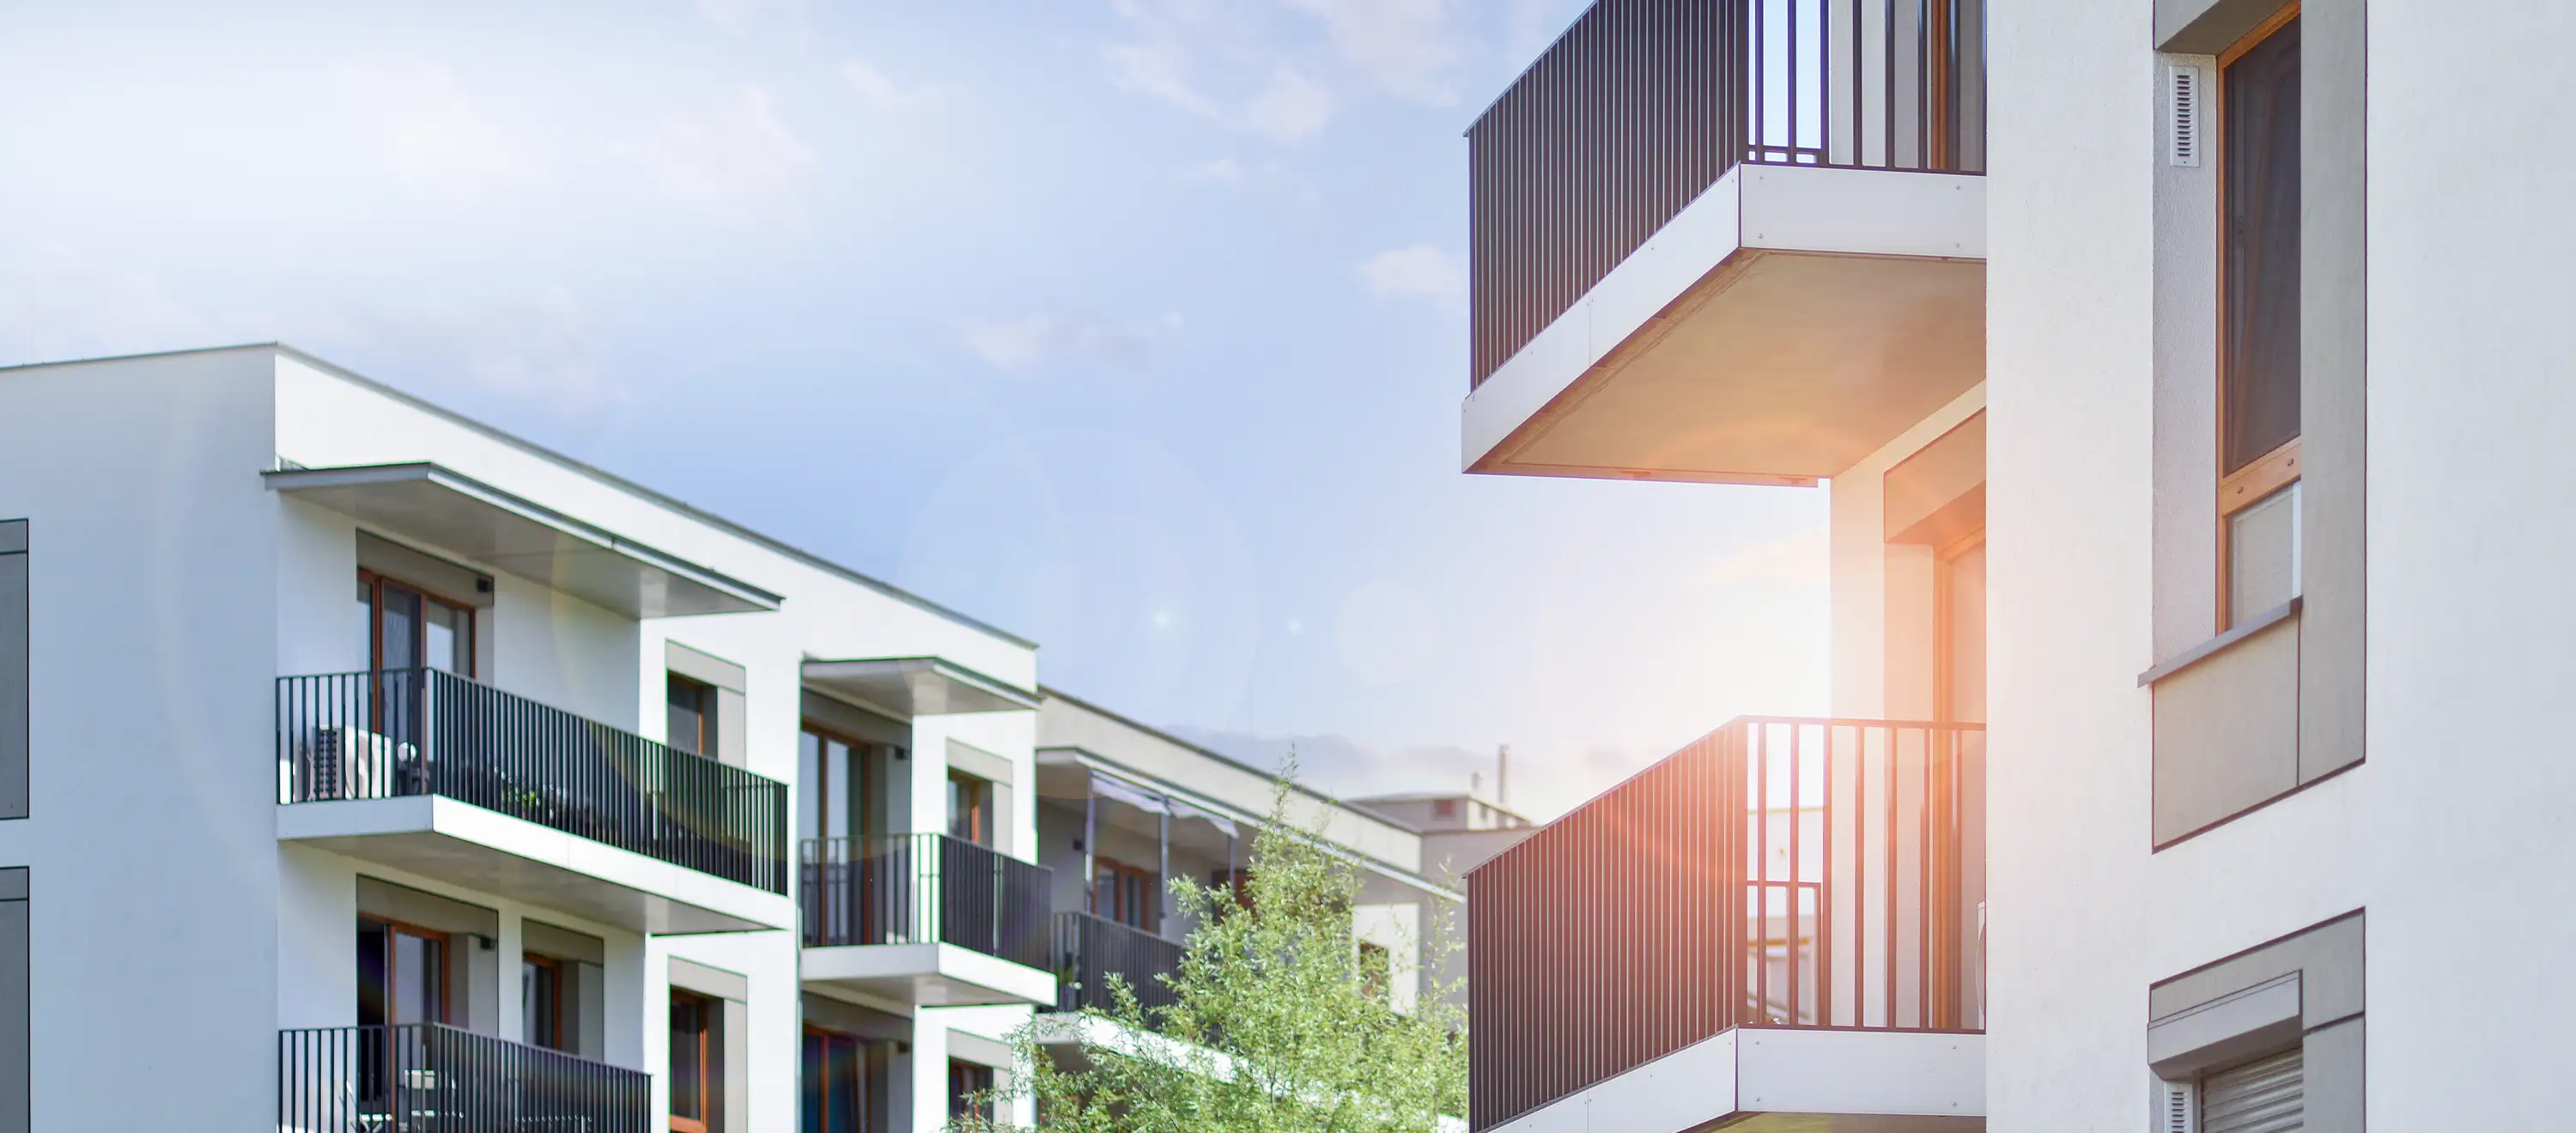 Seher Startbild Unternehmen: modernes Wohnquartier mit Balkonen, Bäumen und Himmel